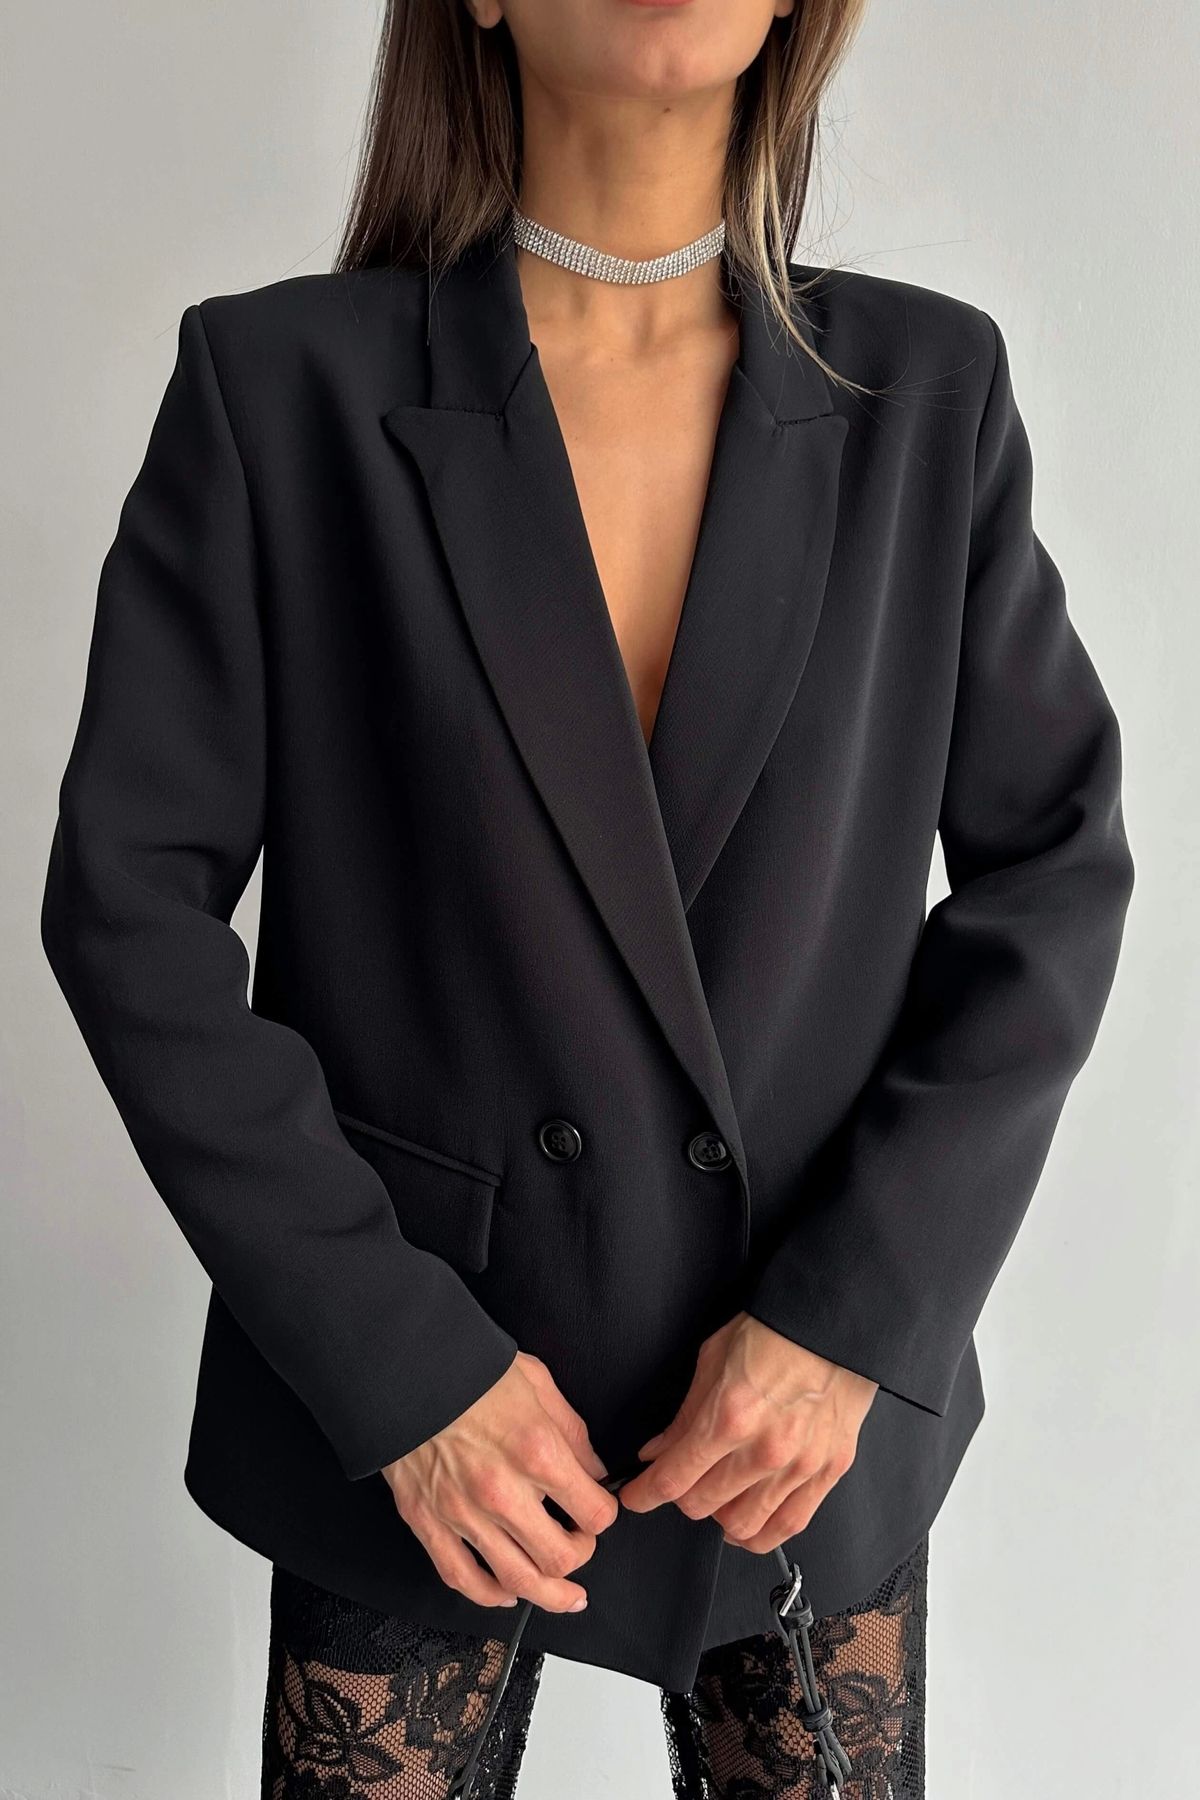 Eka Kadın Siyah Blazer Ceket 0999-9069